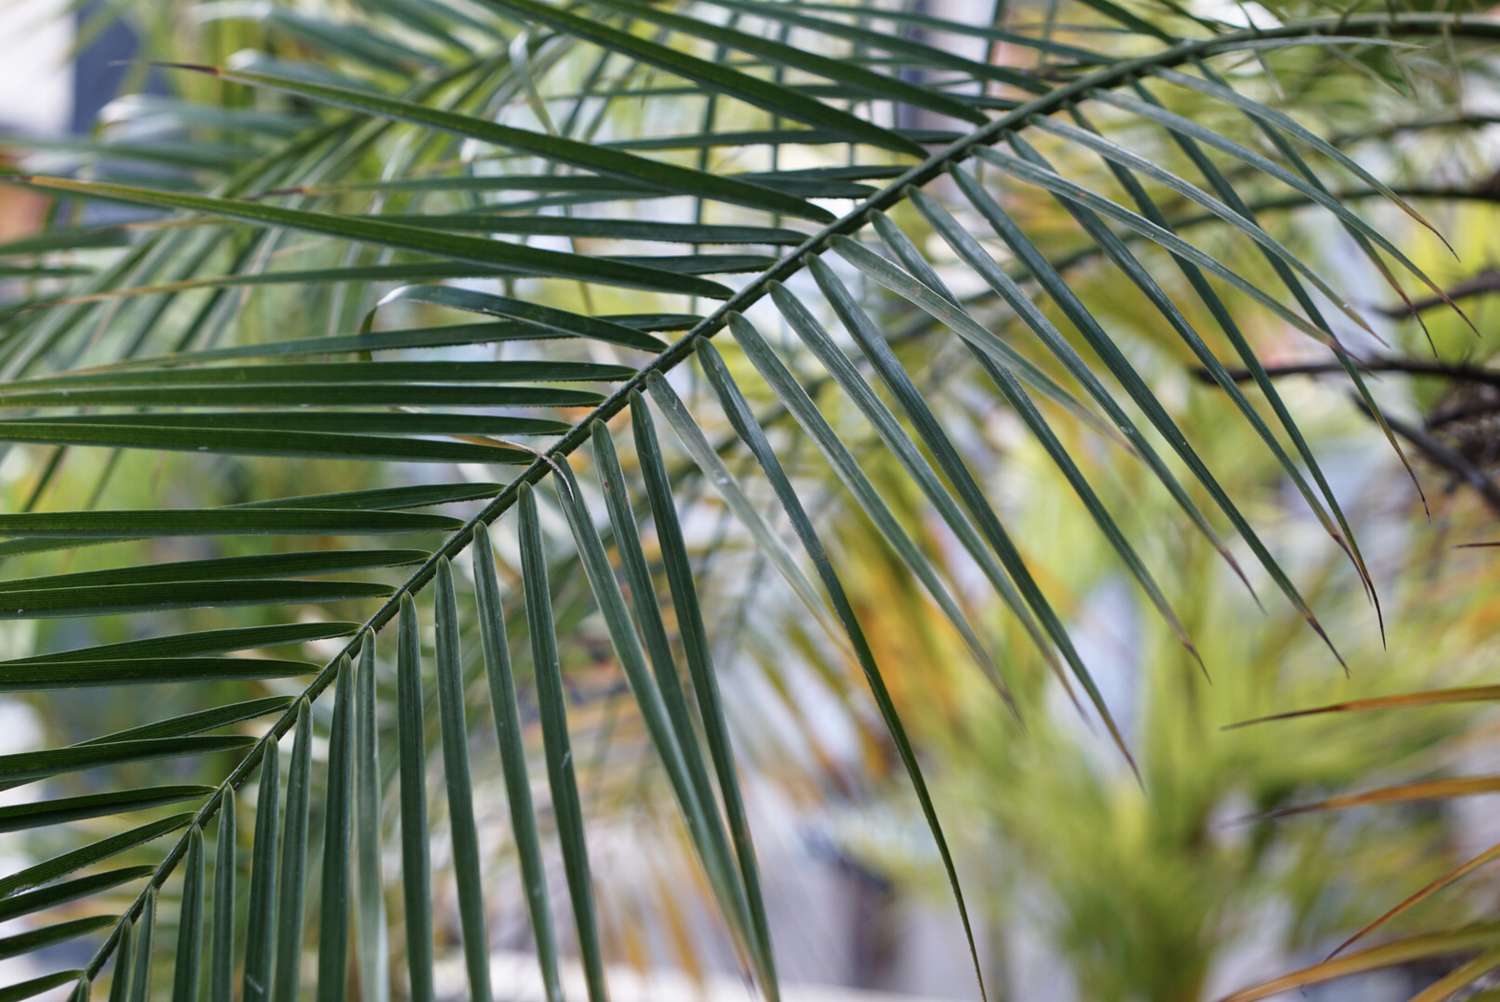 Robellini-Palmenwedel mit langen und dünnen Blättern in Nahaufnahme